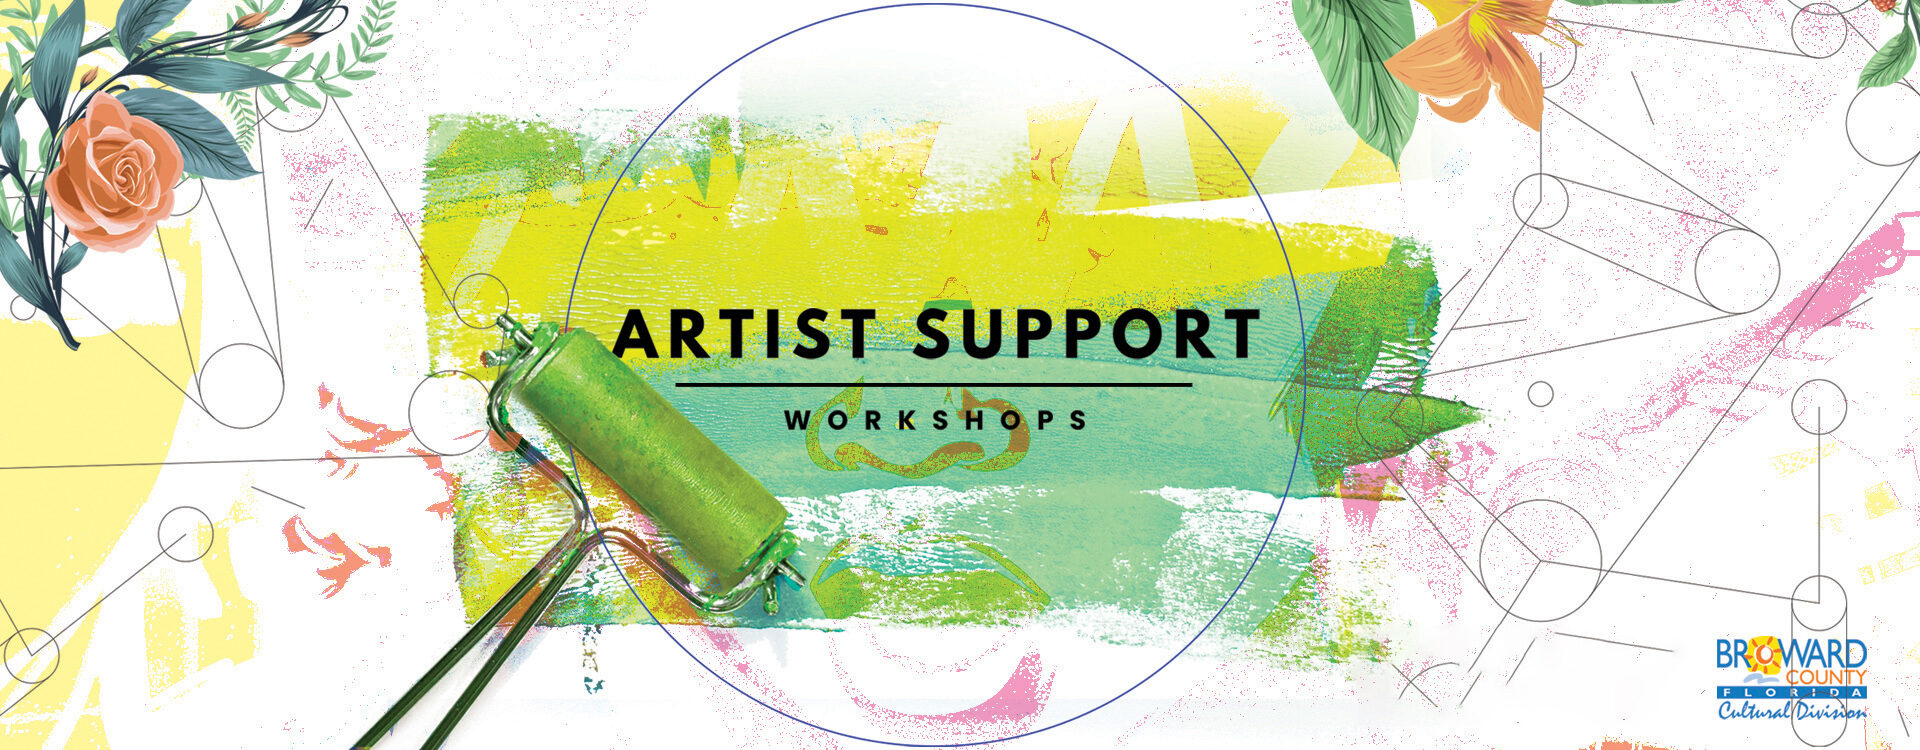 Artist Support Workshops